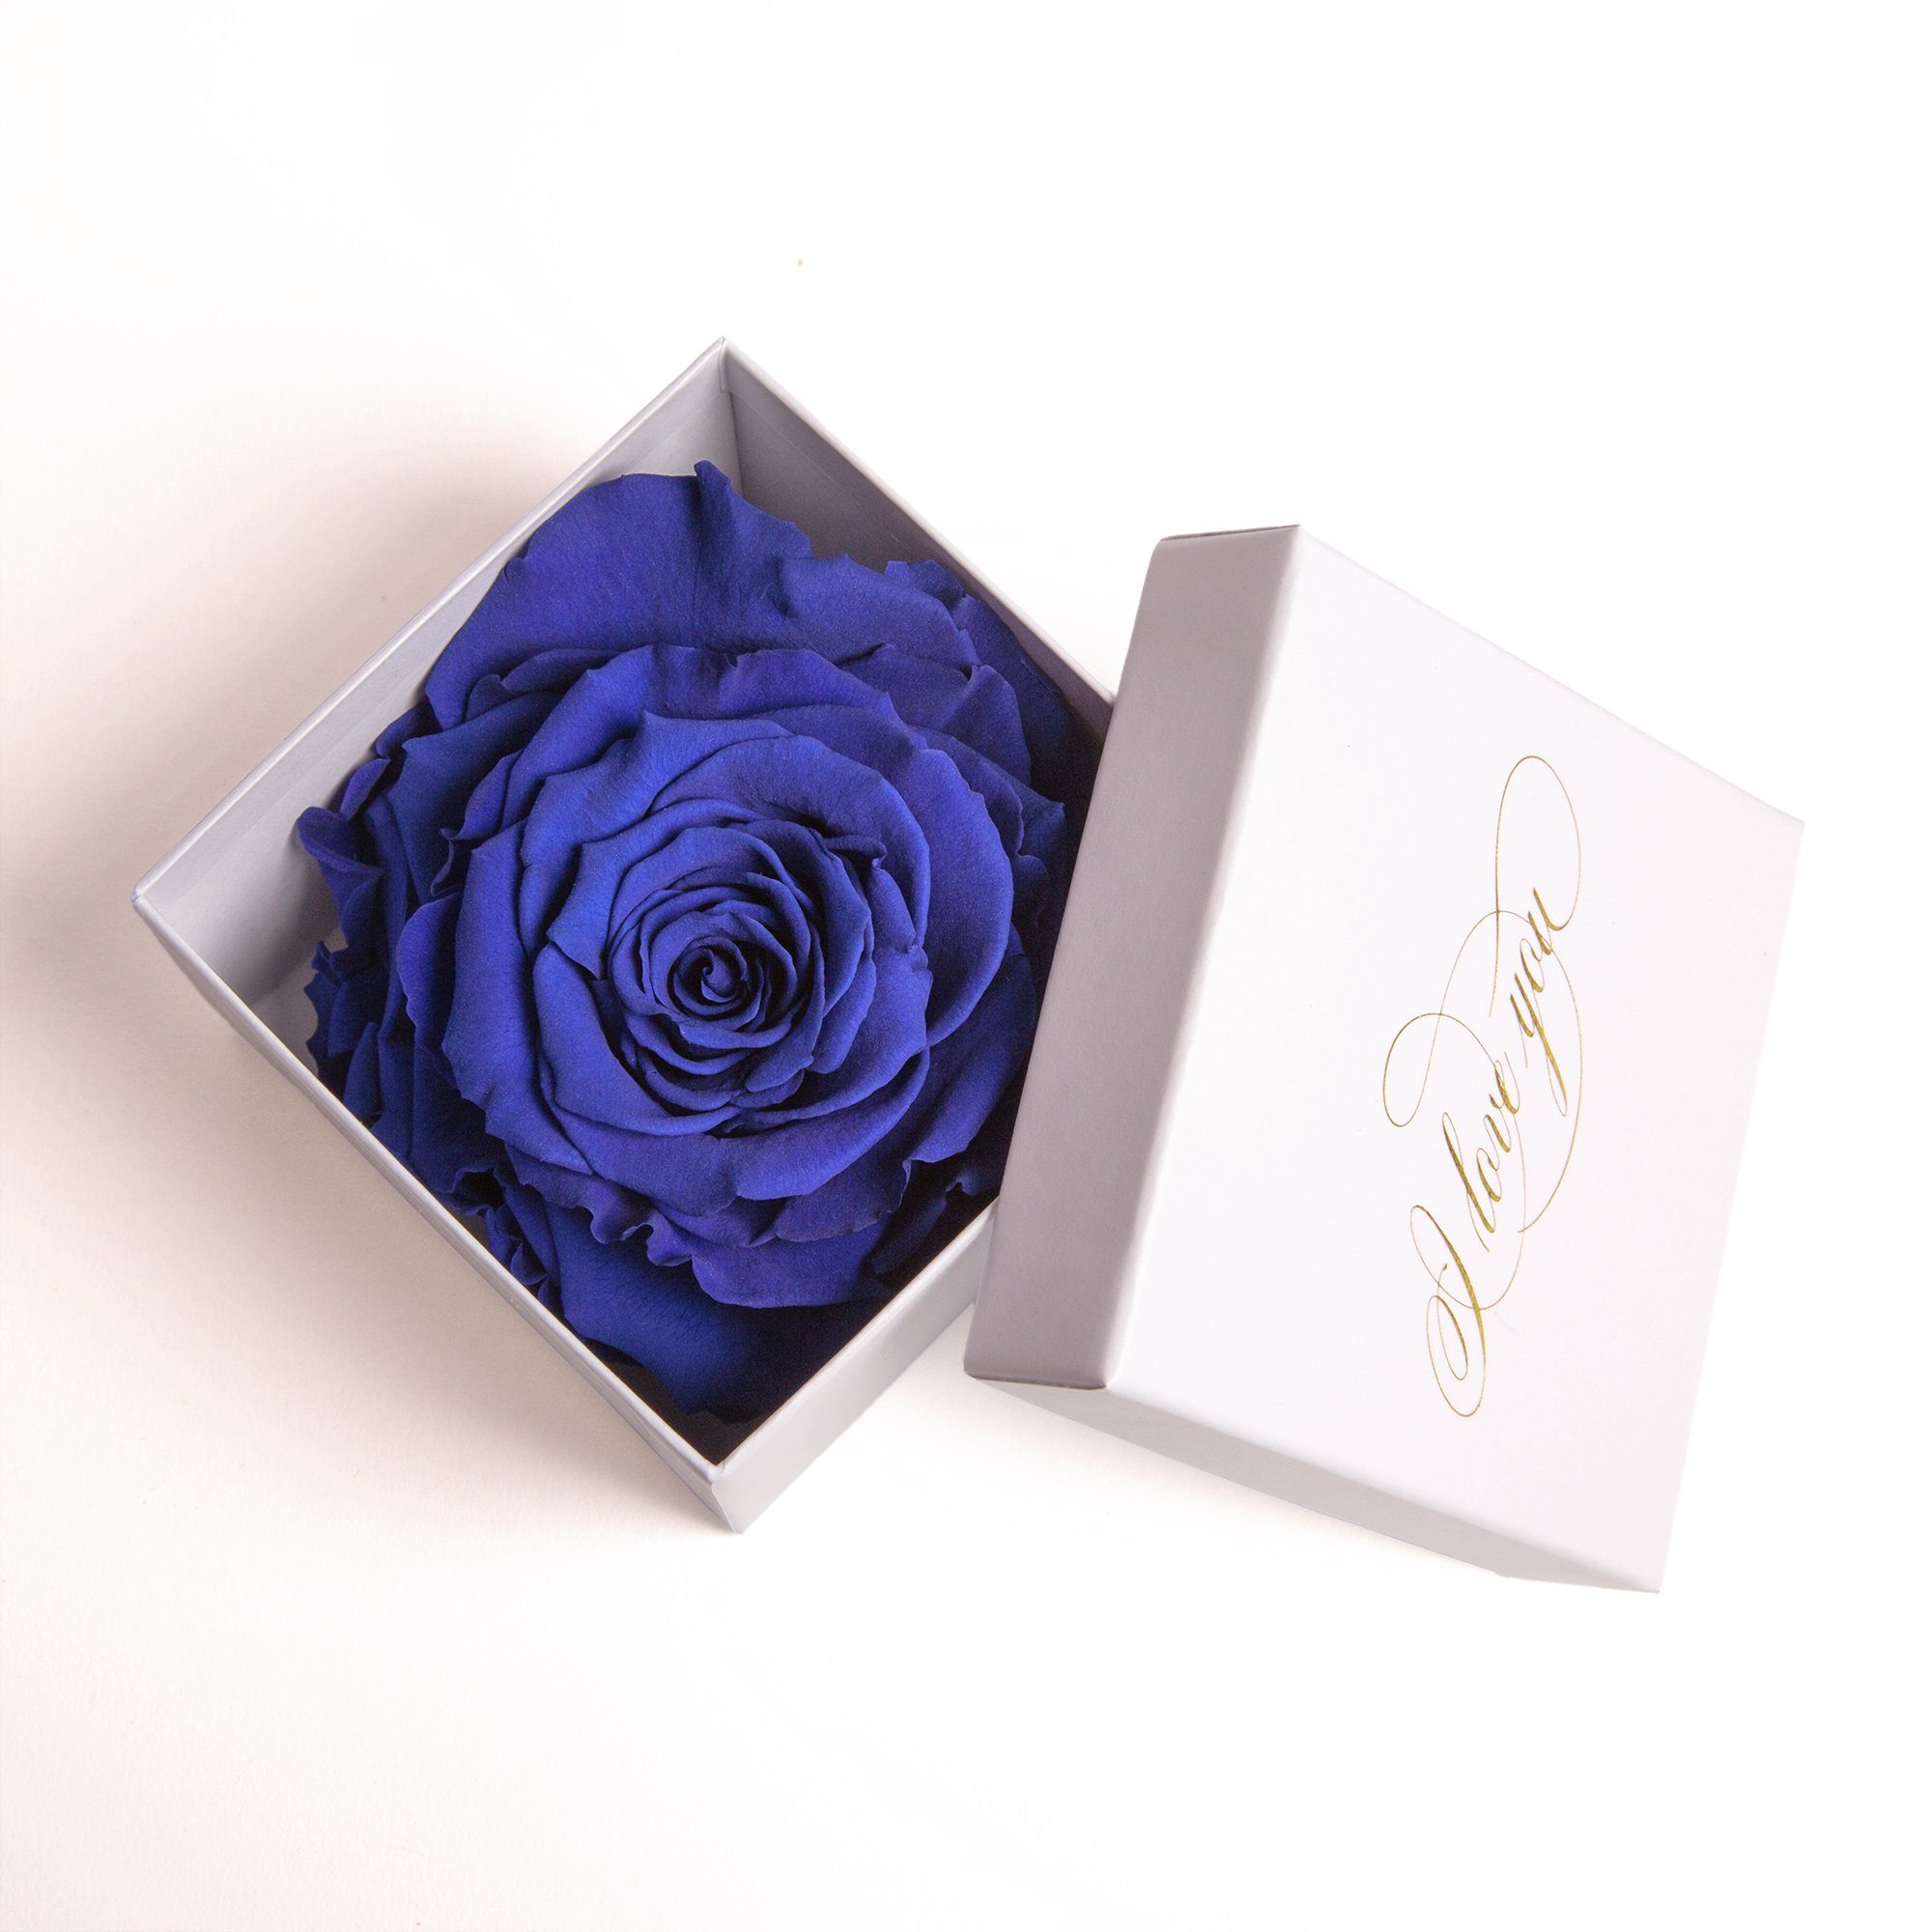 Kunstblume Infinity Rose in Box weiß I LOVE YOU Geschenk Frauen Liebesbeweis Valentinstag Rose, ROSEMARIE SCHULZ Heidelberg, Höhe 6 cm, Rose haltbar bis zu 3 Jahre blau